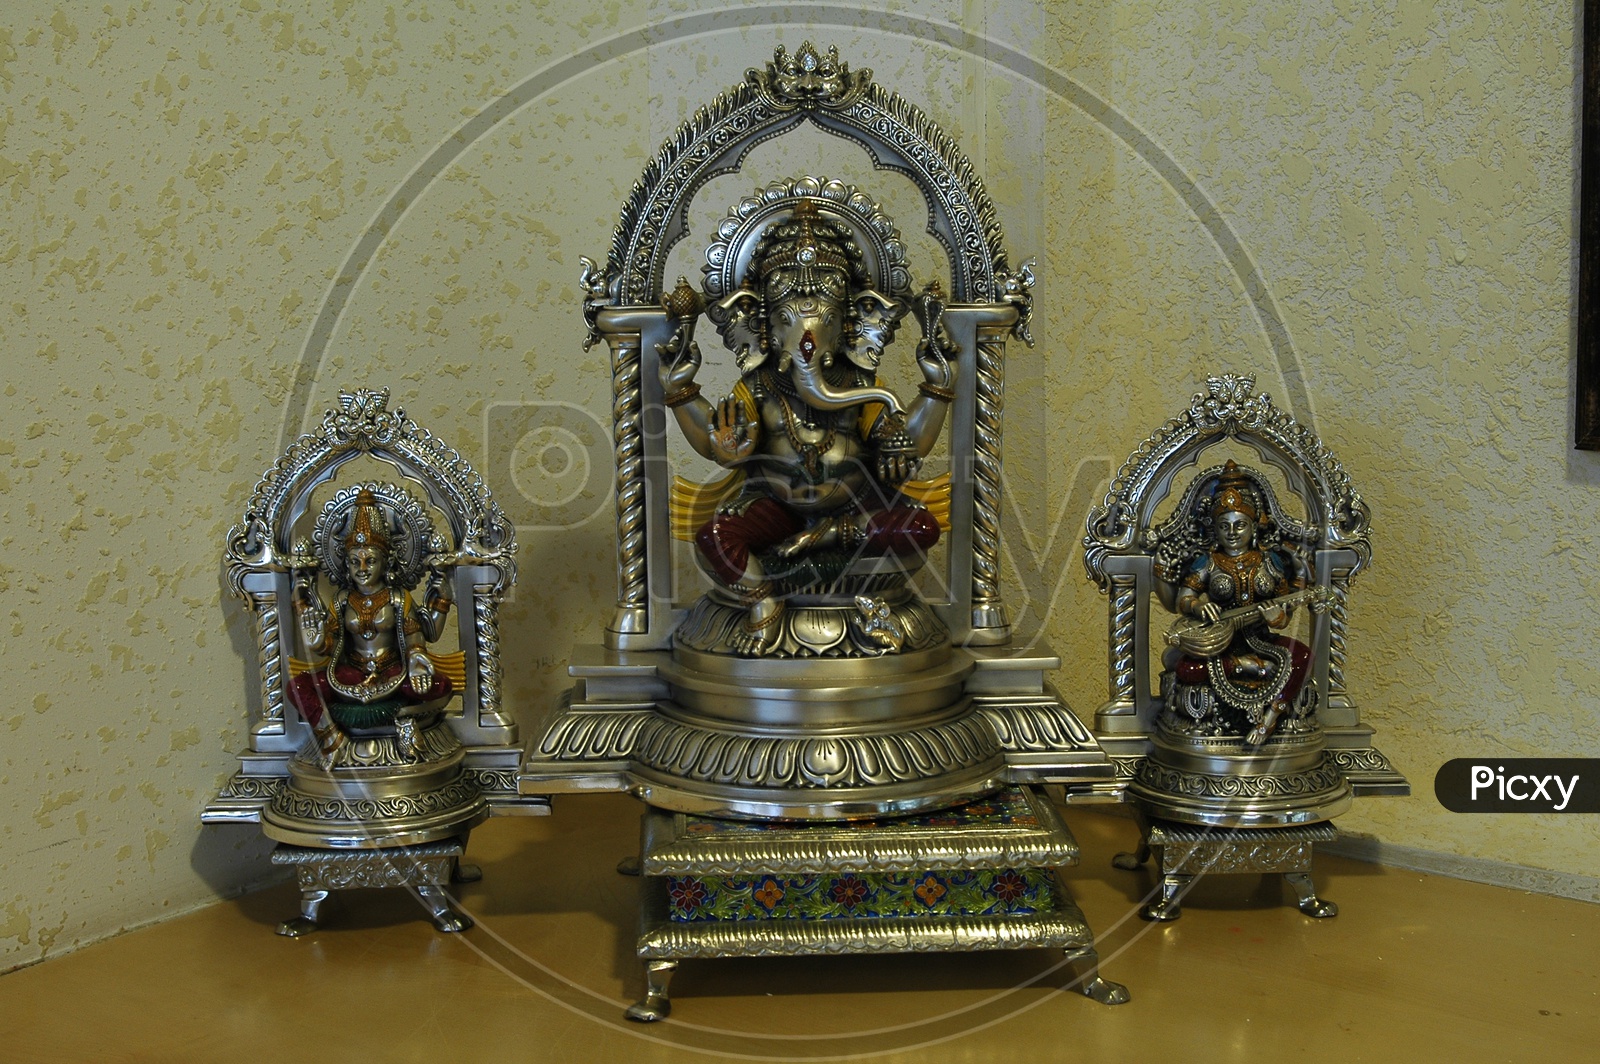 Lord Ganesh Silver Idol In a Prayer Room